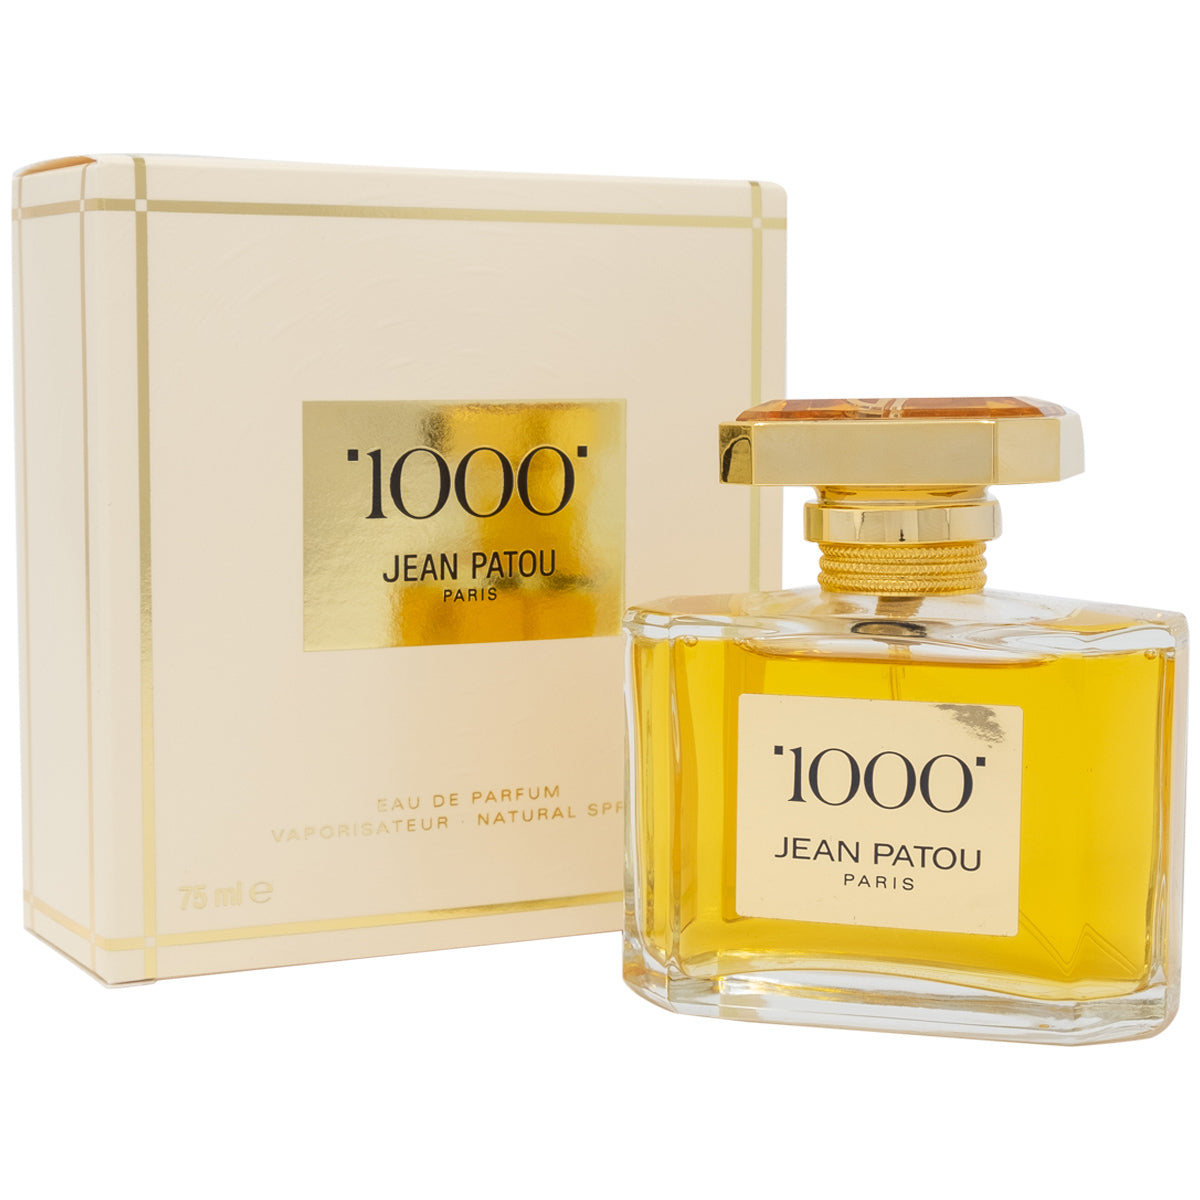 1000 jean patou perfume